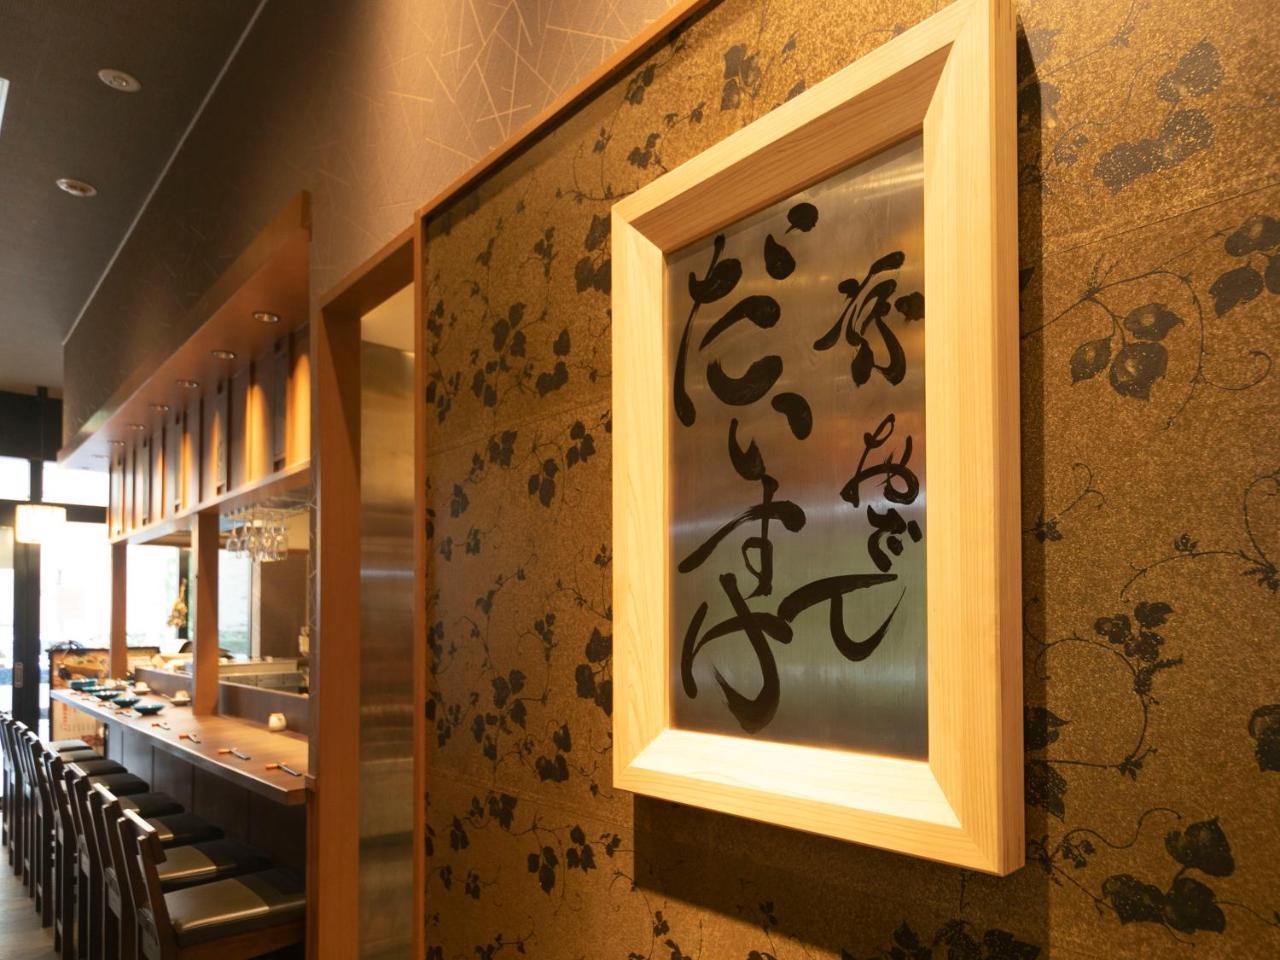 Apa Hotel Kyoto Ekikita Non-Smoking Экстерьер фото